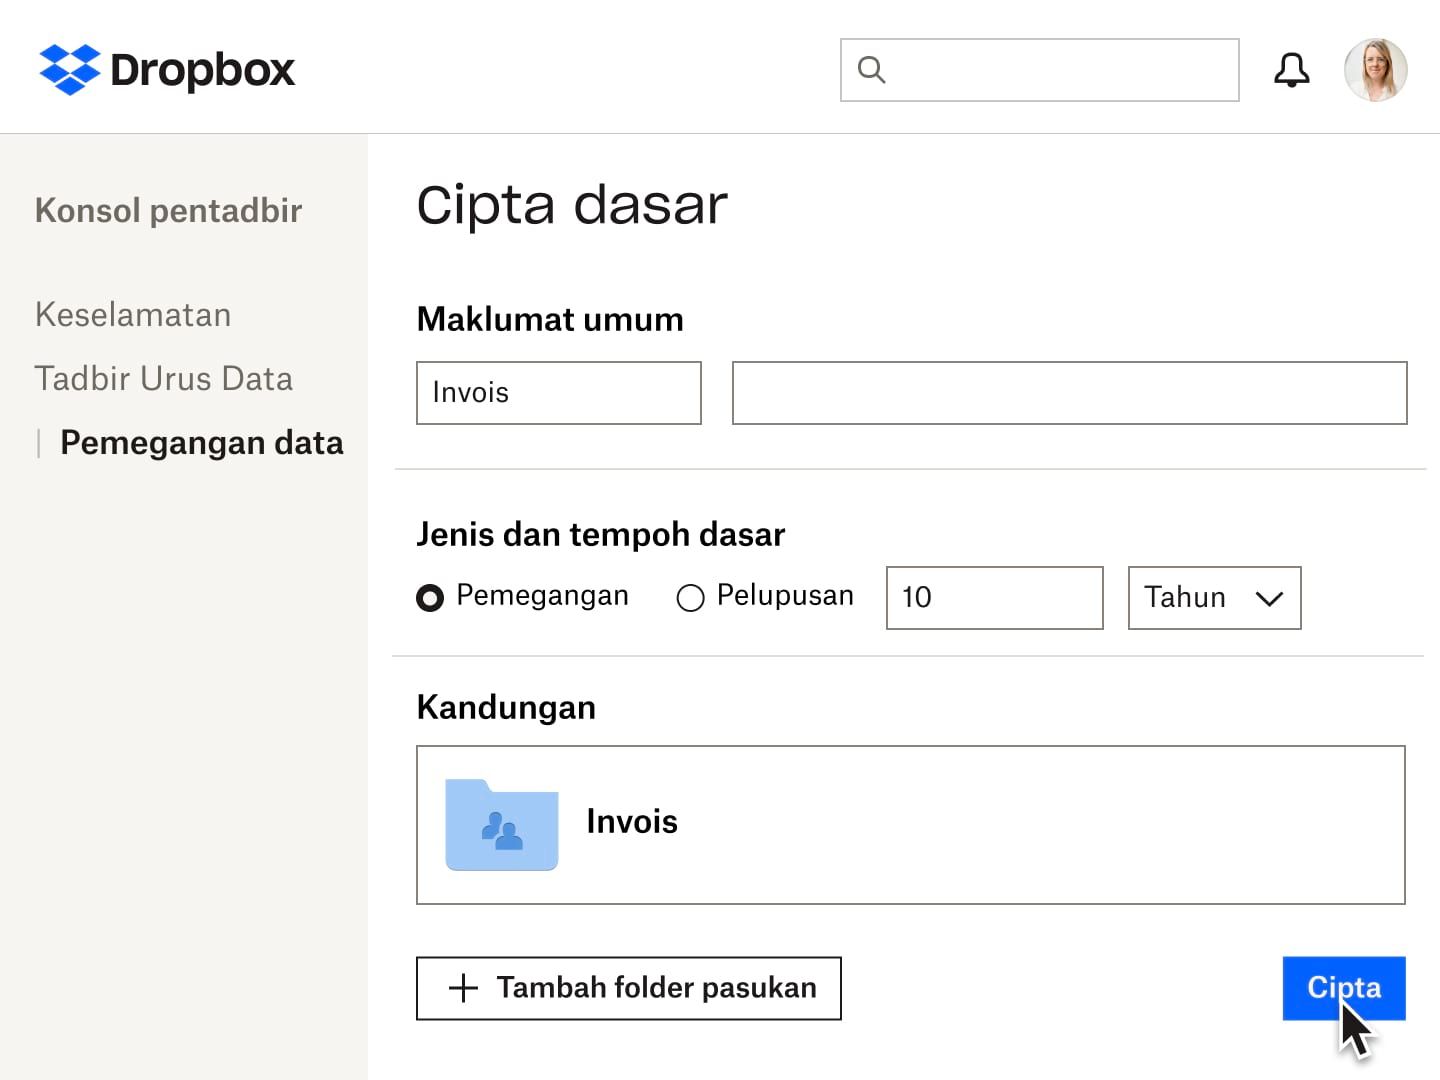 Medan borang untuk mencipta dasar pengekalan data dalam Dropbox